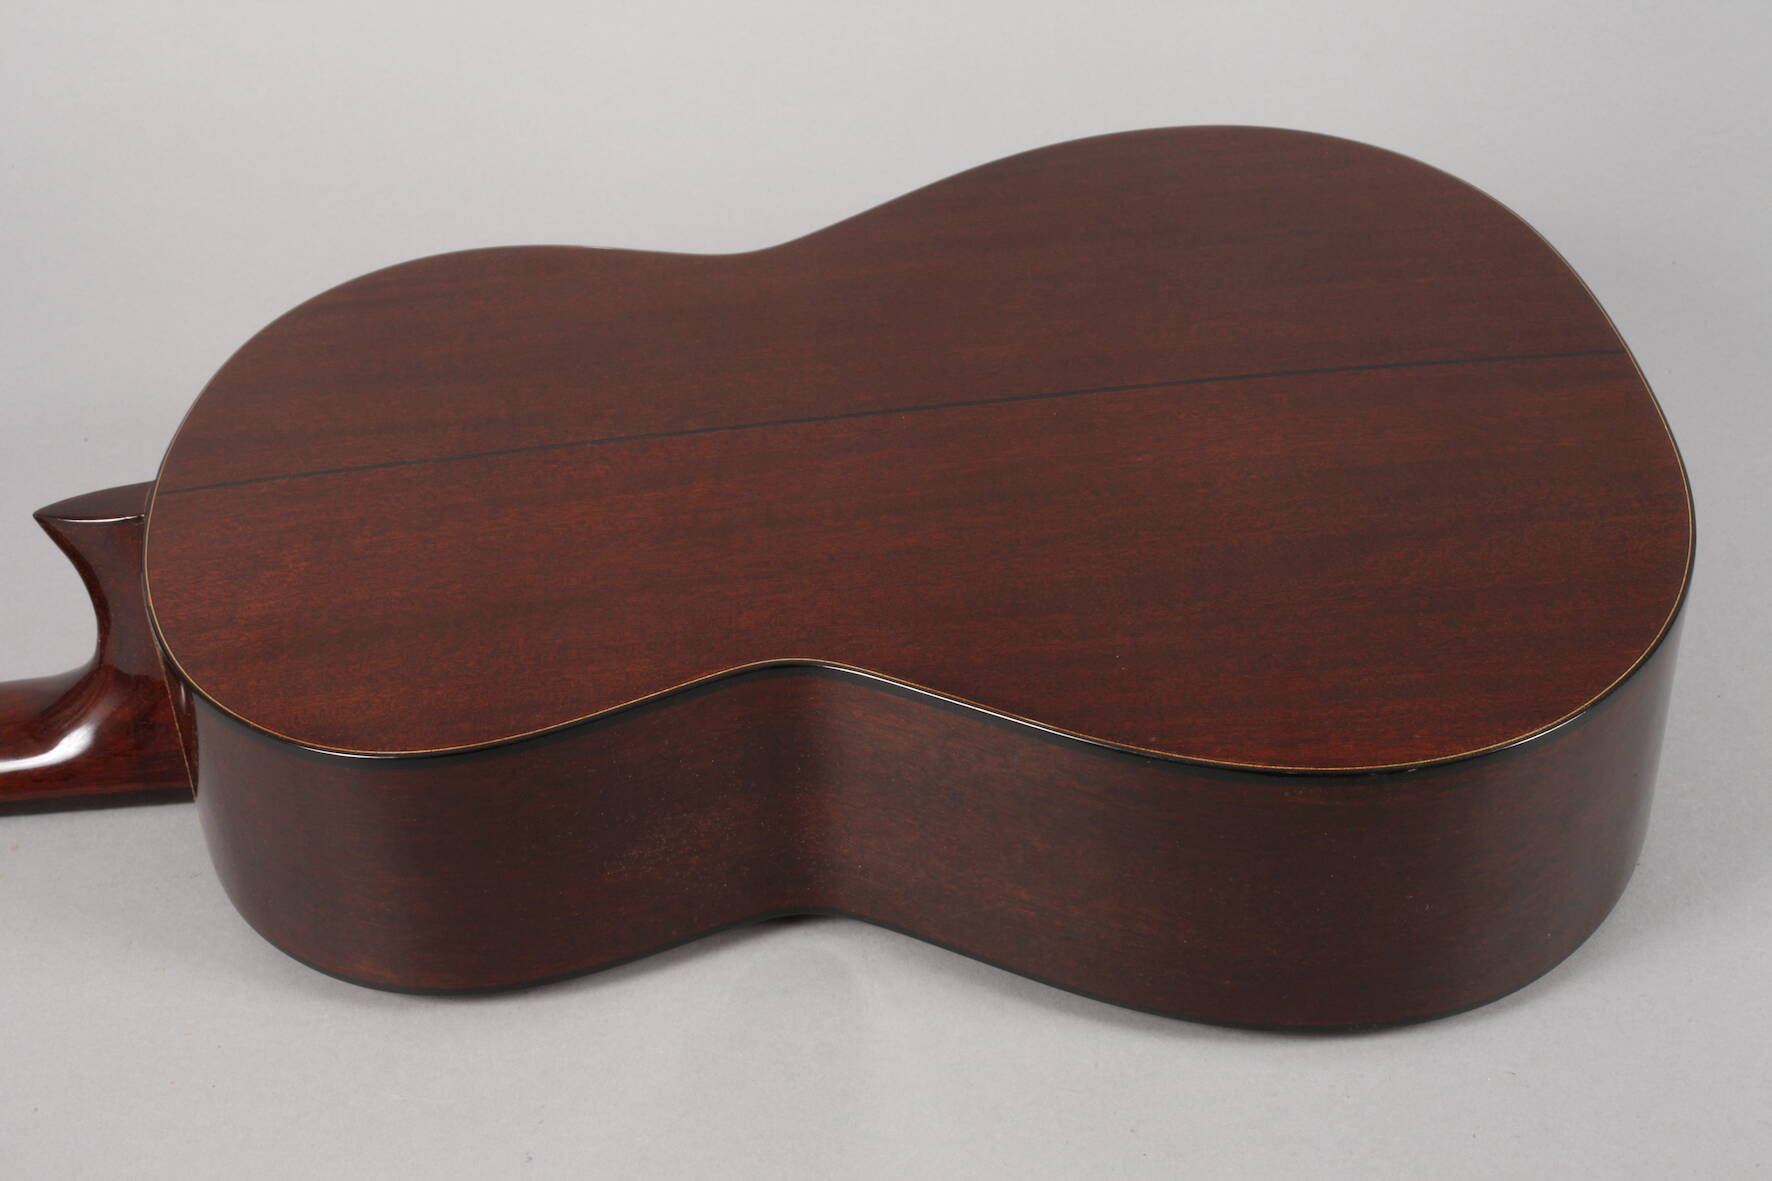 GitarreJapan, innen auf Klebezettel H. Yaini, Modellnummer Y70, Seriennummer 5234, datiert 1973, - Image 3 of 5